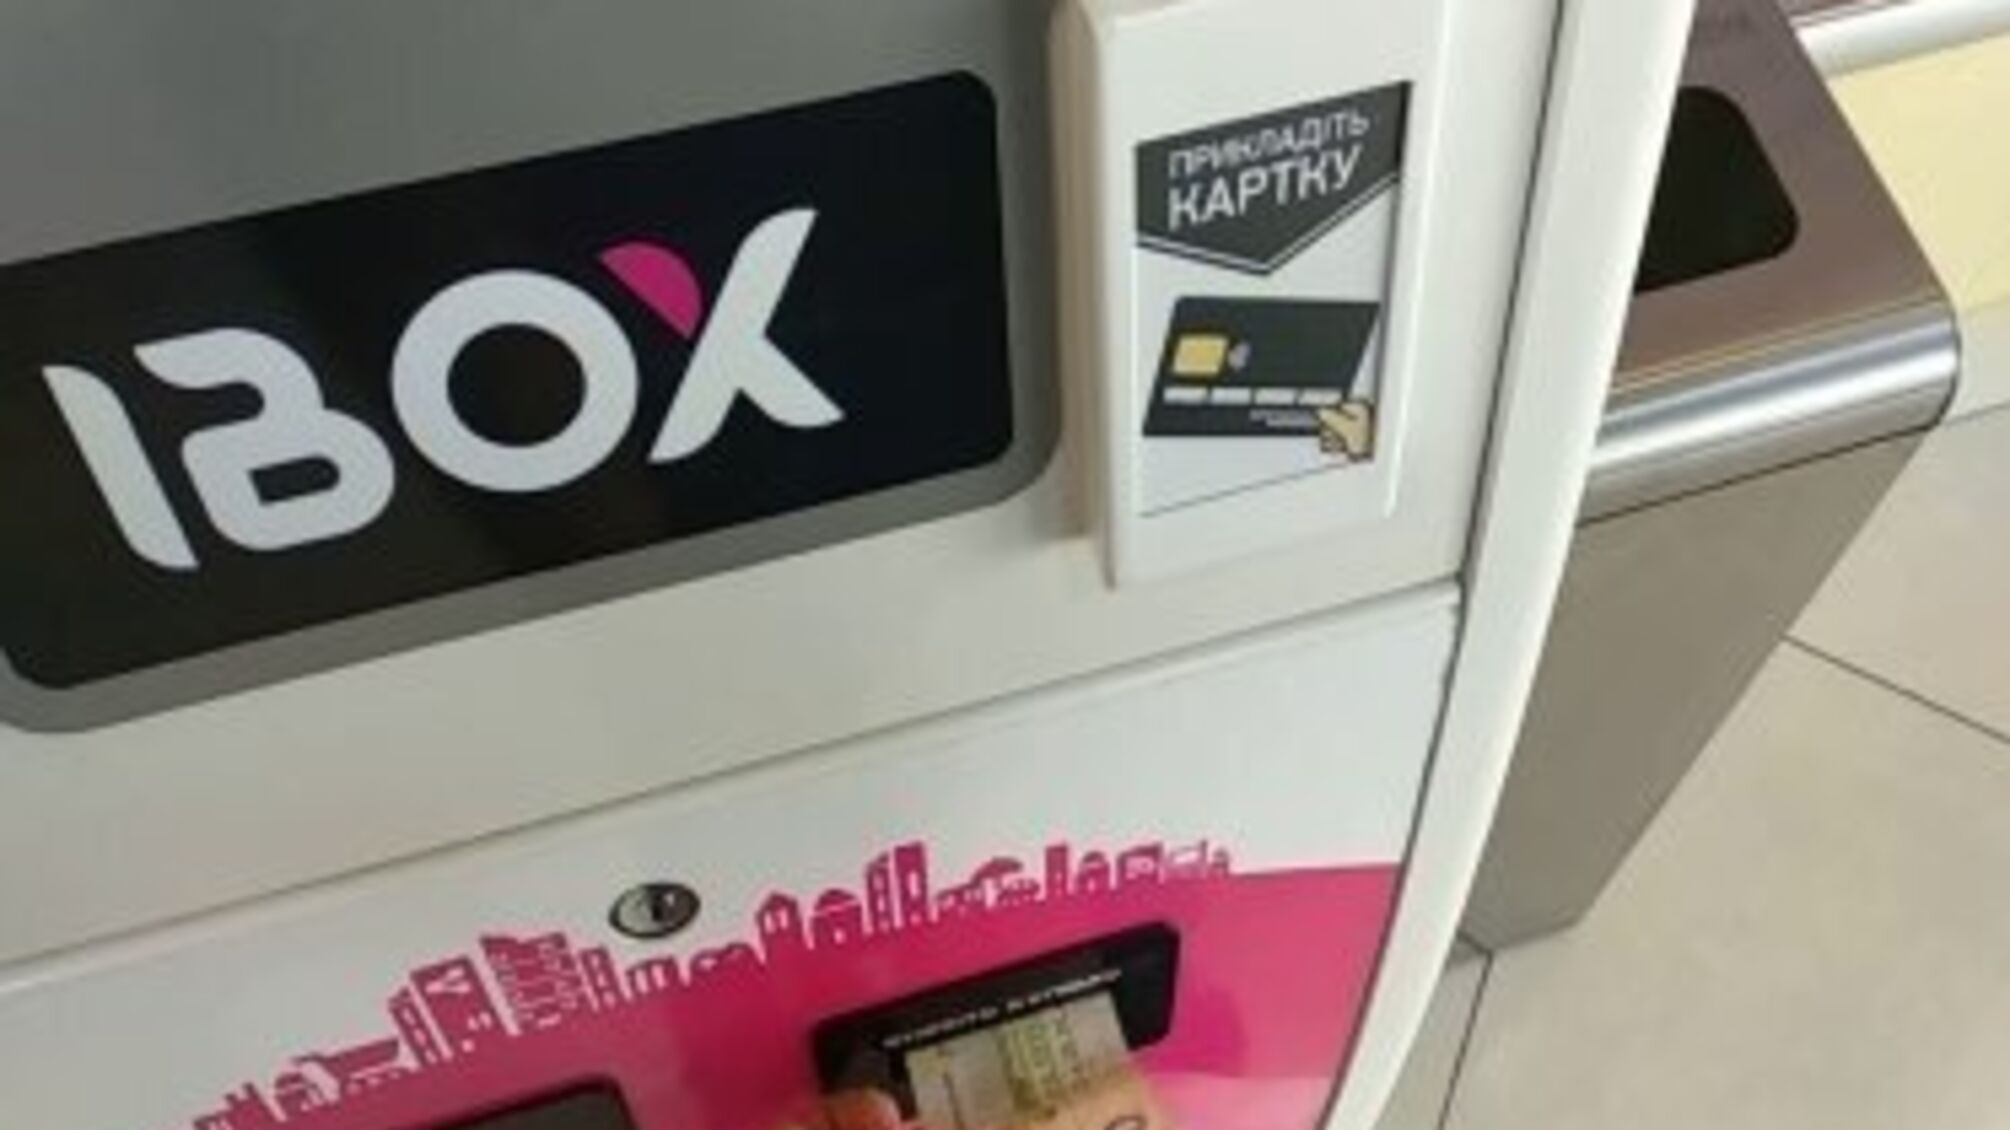 Поповнити картку чи рахунок через IBOX неможливо: НБУ позбавив їхній банк ліцензії